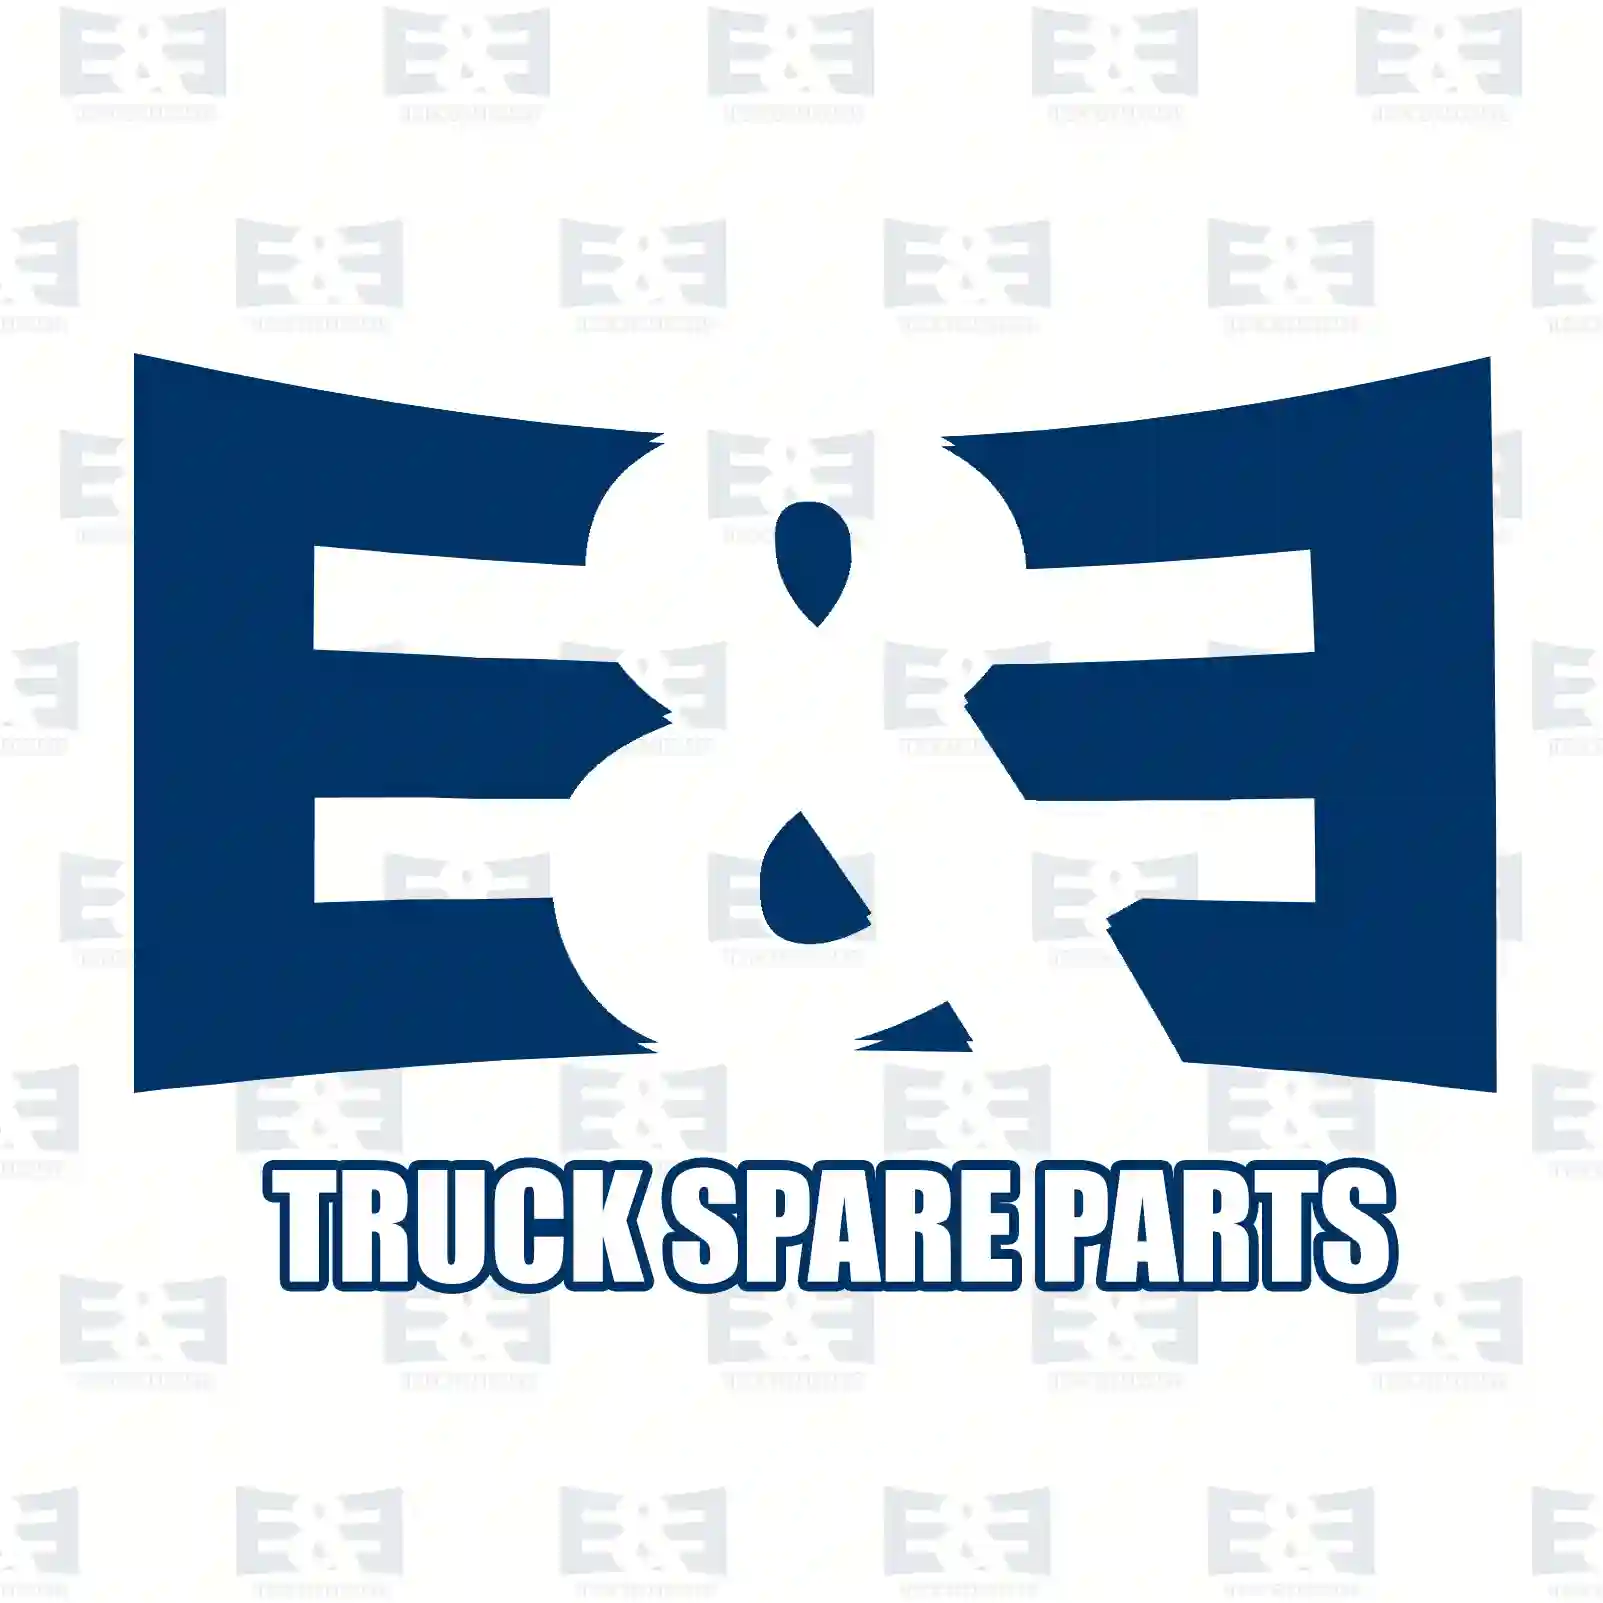 W-connector, 2E2296327, 0019907971, 0049905371, ||  2E2296327 E&E Truck Spare Parts | Truck Spare Parts, Auotomotive Spare Parts W-connector, 2E2296327, 0019907971, 0049905371, ||  2E2296327 E&E Truck Spare Parts | Truck Spare Parts, Auotomotive Spare Parts